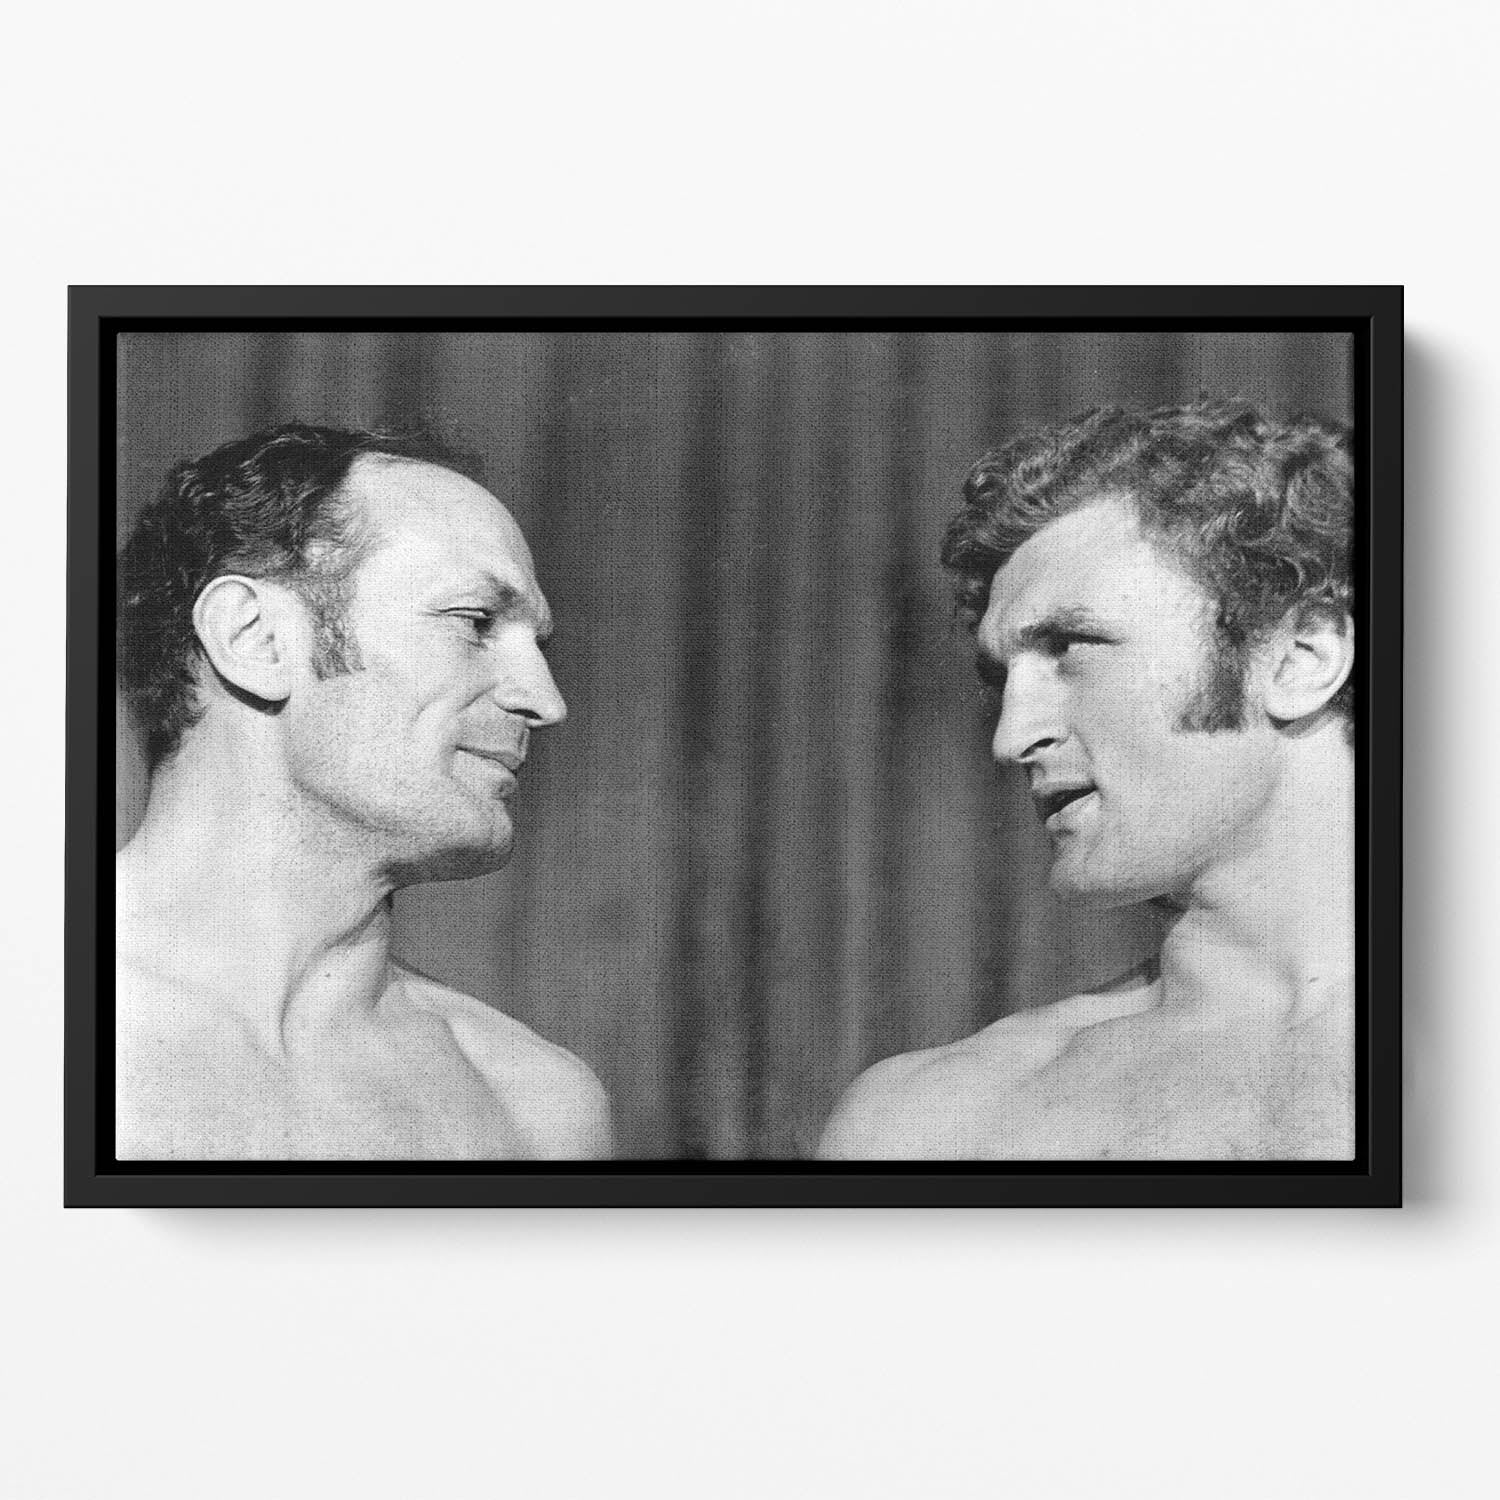 Boxers Henry Cooper and Joe Bugner Floating Framed Canvas